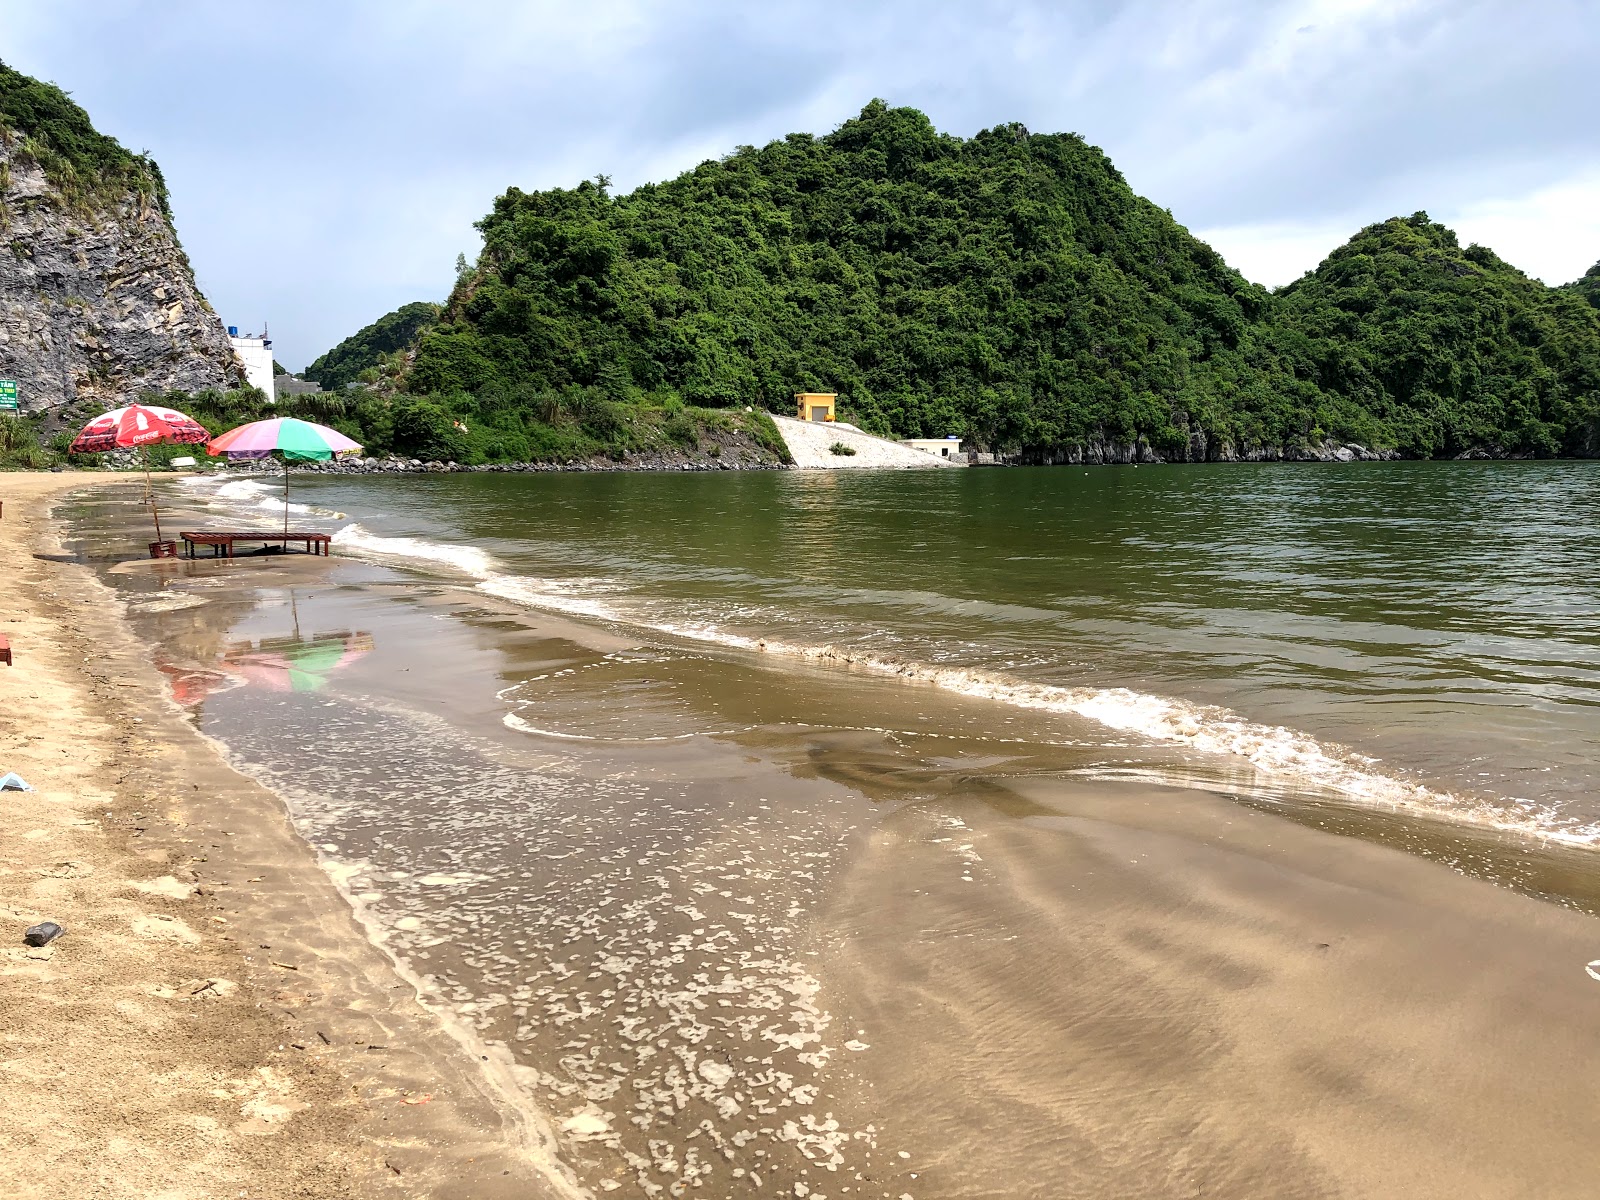 Fotografie cu Tung thu beach cu o suprafață de nisip strălucitor